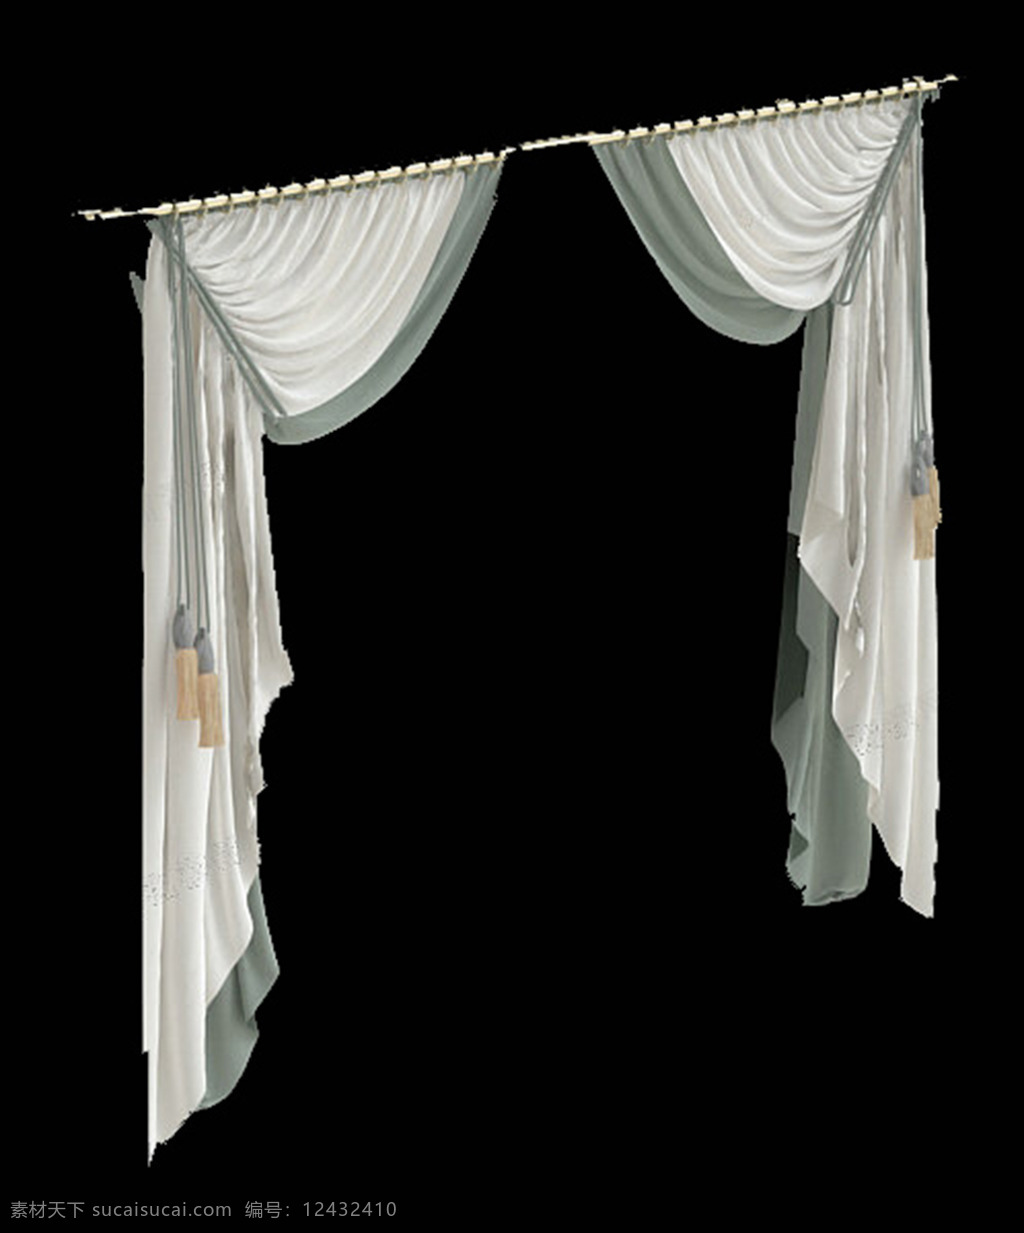 窗帘 模板下载 帘 模型 素材图片 纱帘 幕布 室内模型 3d设计模型 源文件 max 窗帘模型 窗 黑色